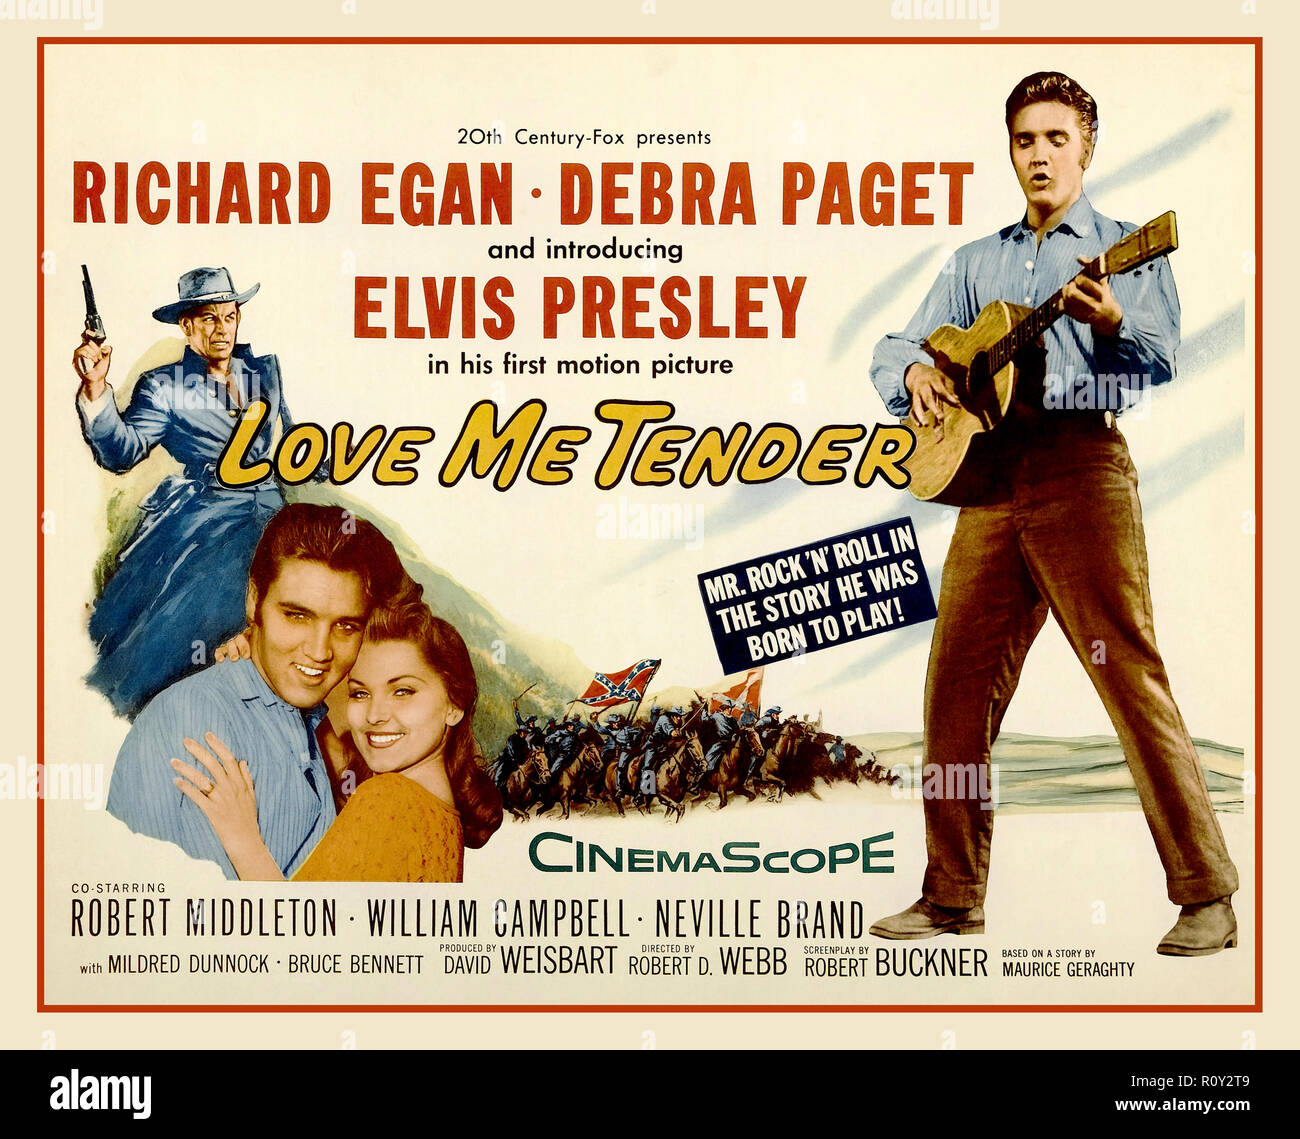 ELVIS PRESLEY 'Love Me Tender' affiche de film vintage 'Love Me Tender' est une chanson de 1956 enregistrée par Elvis Presley et publiée par Elvis Presley Music du film Fox du même nom du XXe siècle. Les mots et la musique sont crédités à Ken Darby sous le pseudonyme de 'Vera Matson', le nom de sa femme, et Elvis Presley. L'enregistrement RCA Victor d'Elvis Presley était le numéro 1 sur les graphiques Billboard et Cashbox en 1956. Banque D'Images